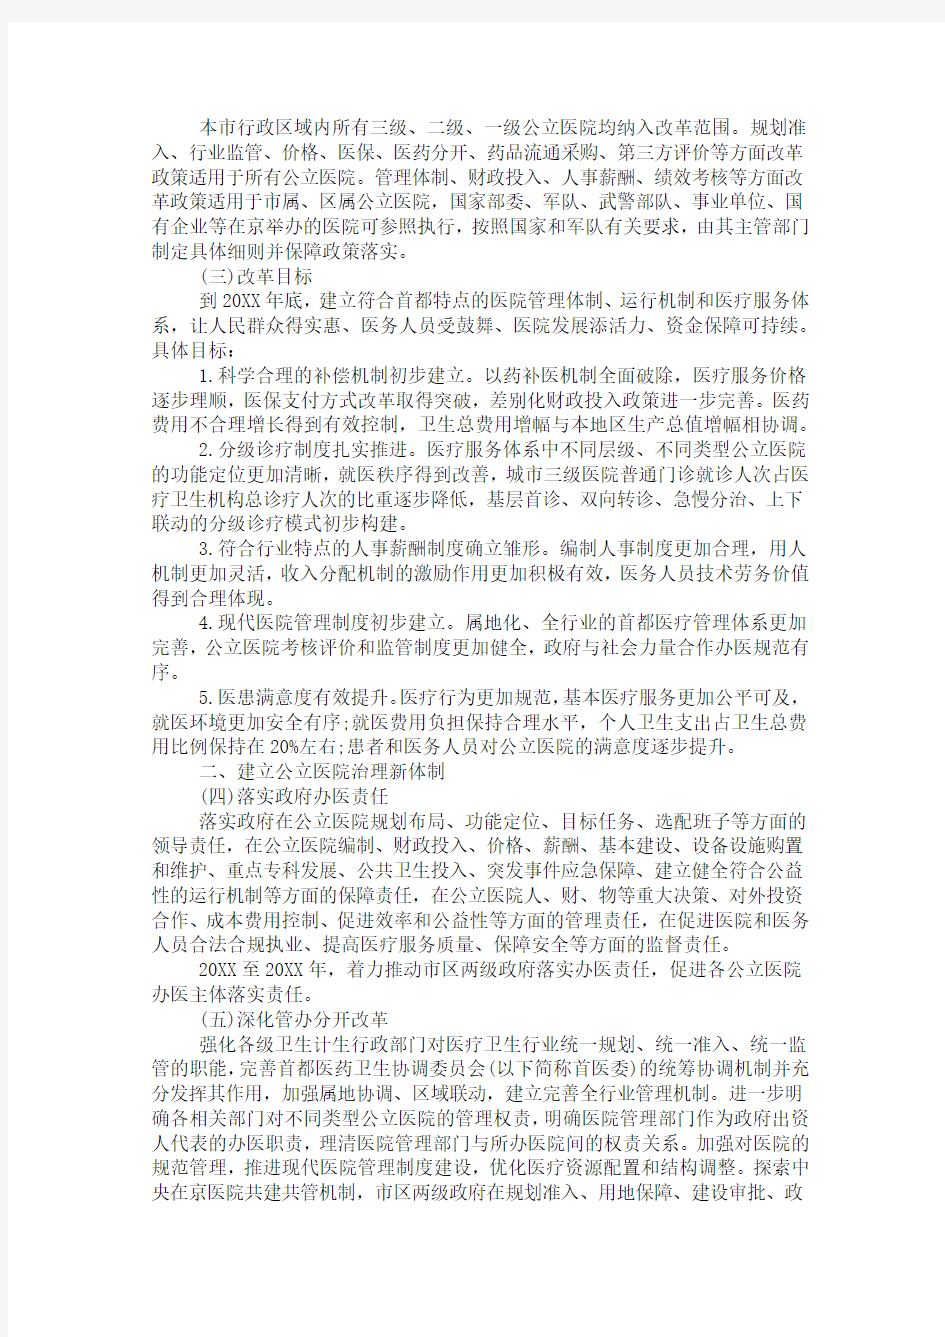 北京市城市公立医院综合改革实施方案